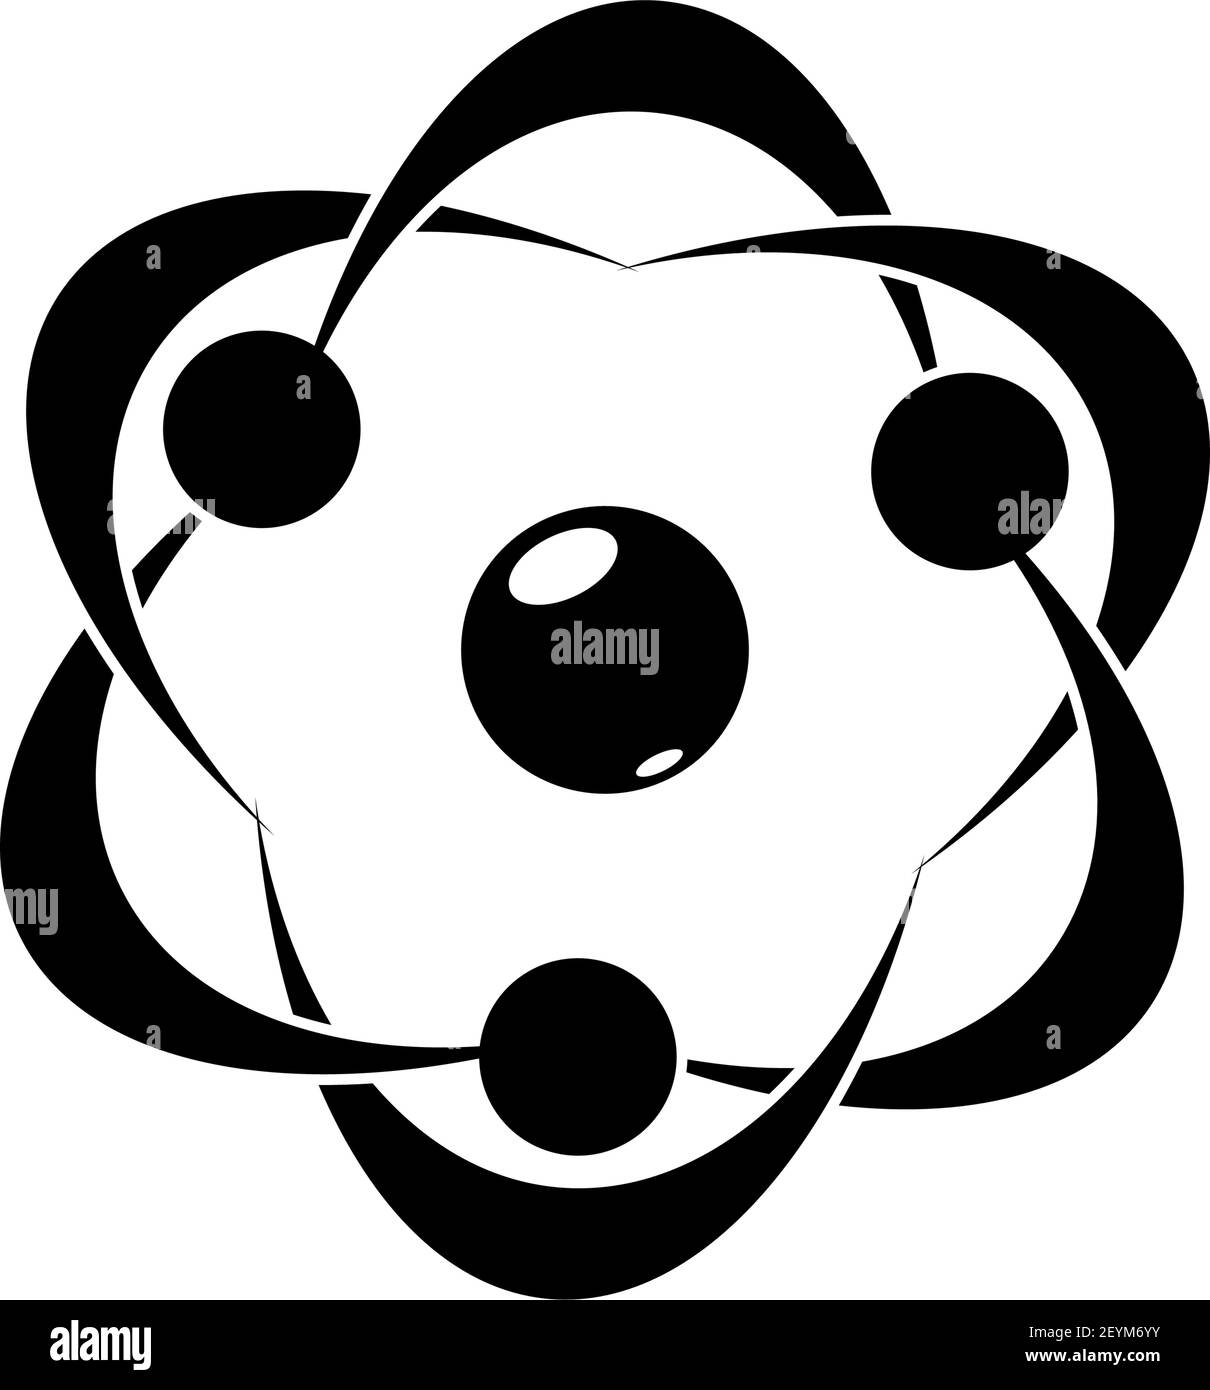 Moleküle und Atome Symbole isoliert chaotische Bewegung. Vektorbiologie, Pharmazie, Chemie Wissenschaft Logo Stock Vektor